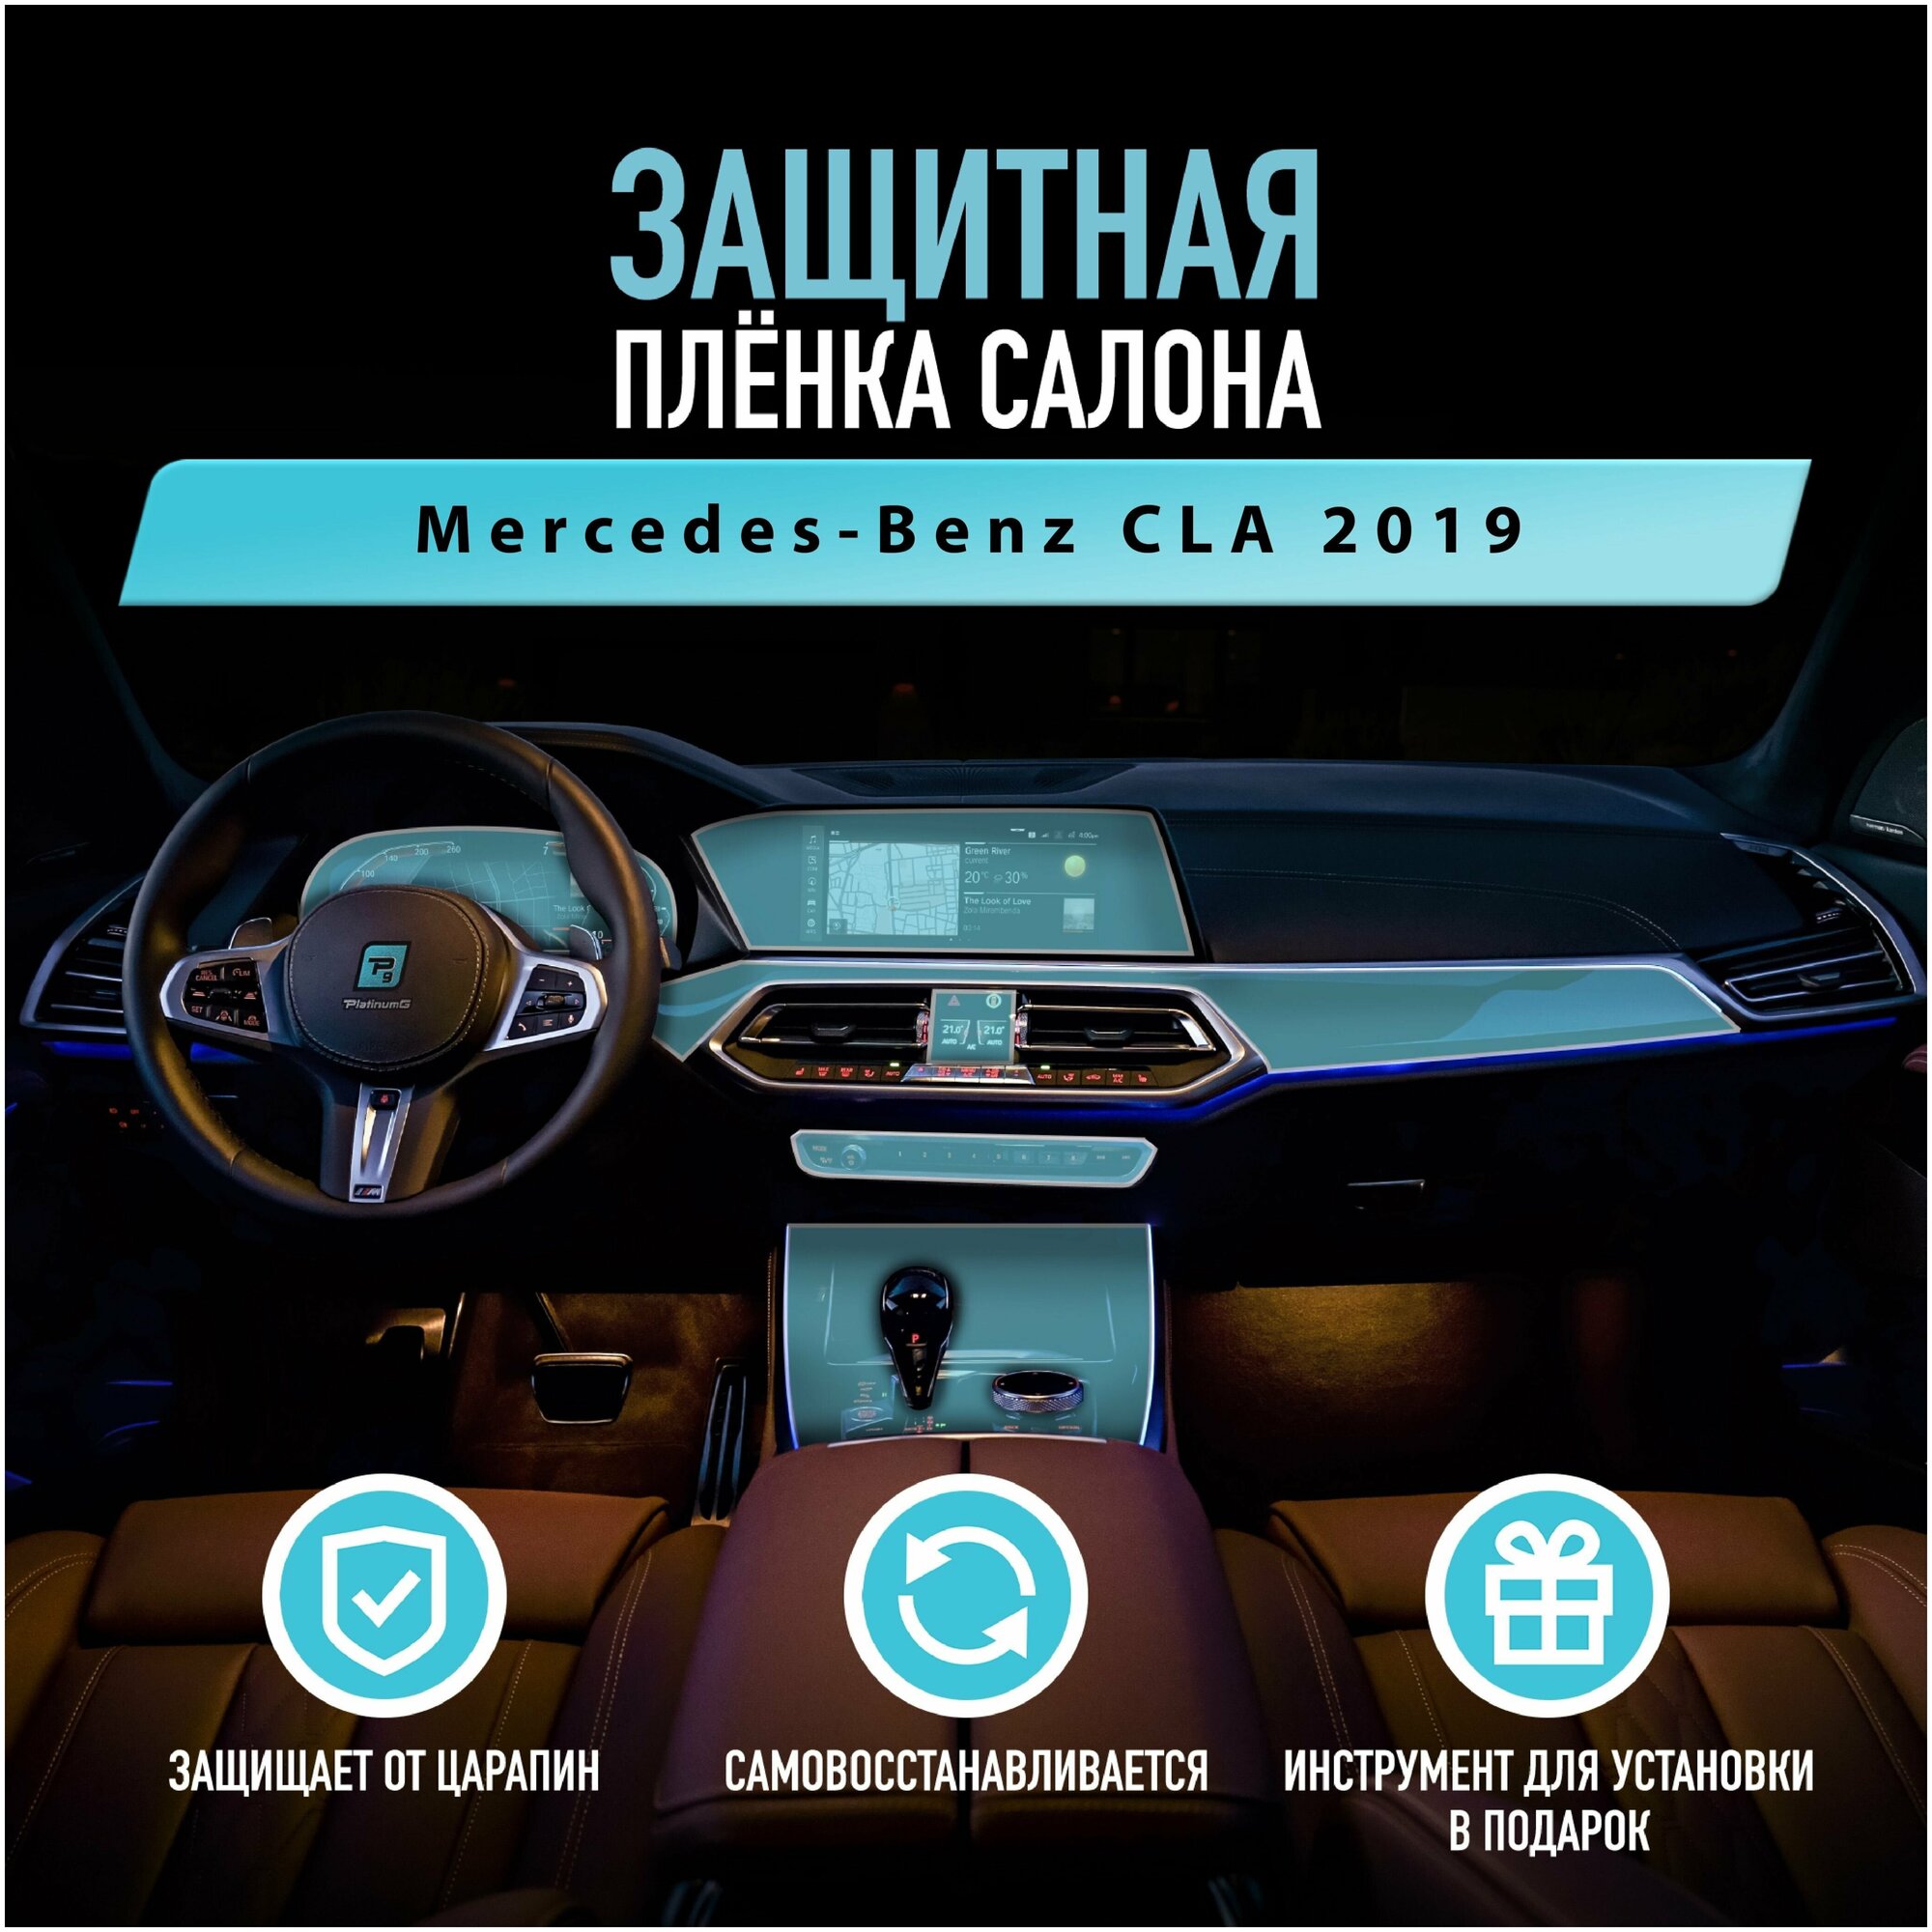 Защитная пленка для автомобиля Mercedes-Benz CLA 2019 Мерседес, полиуретановая антигравийная пленка для салона, глянцевая